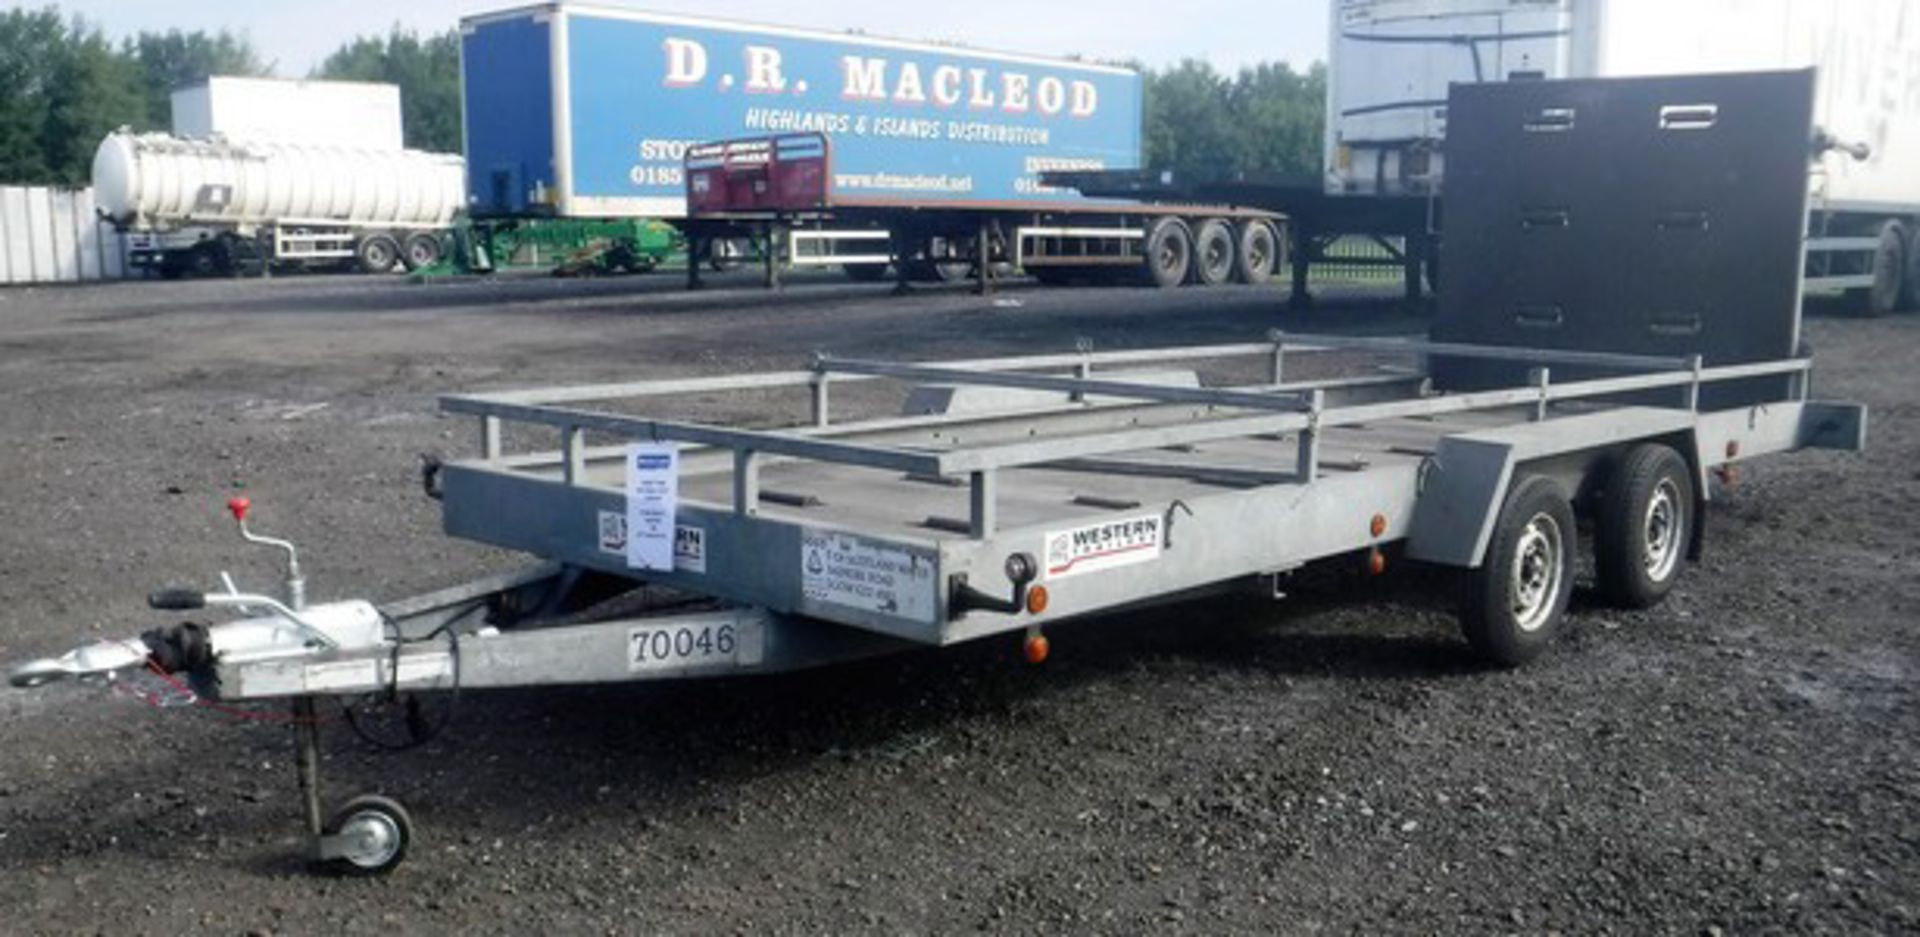 1999 WESTERN TRAILERS 18' x 6' twin axle trailer c/w 5' ramp. Max gross weight 2000kg. VIN - SEWTTRT